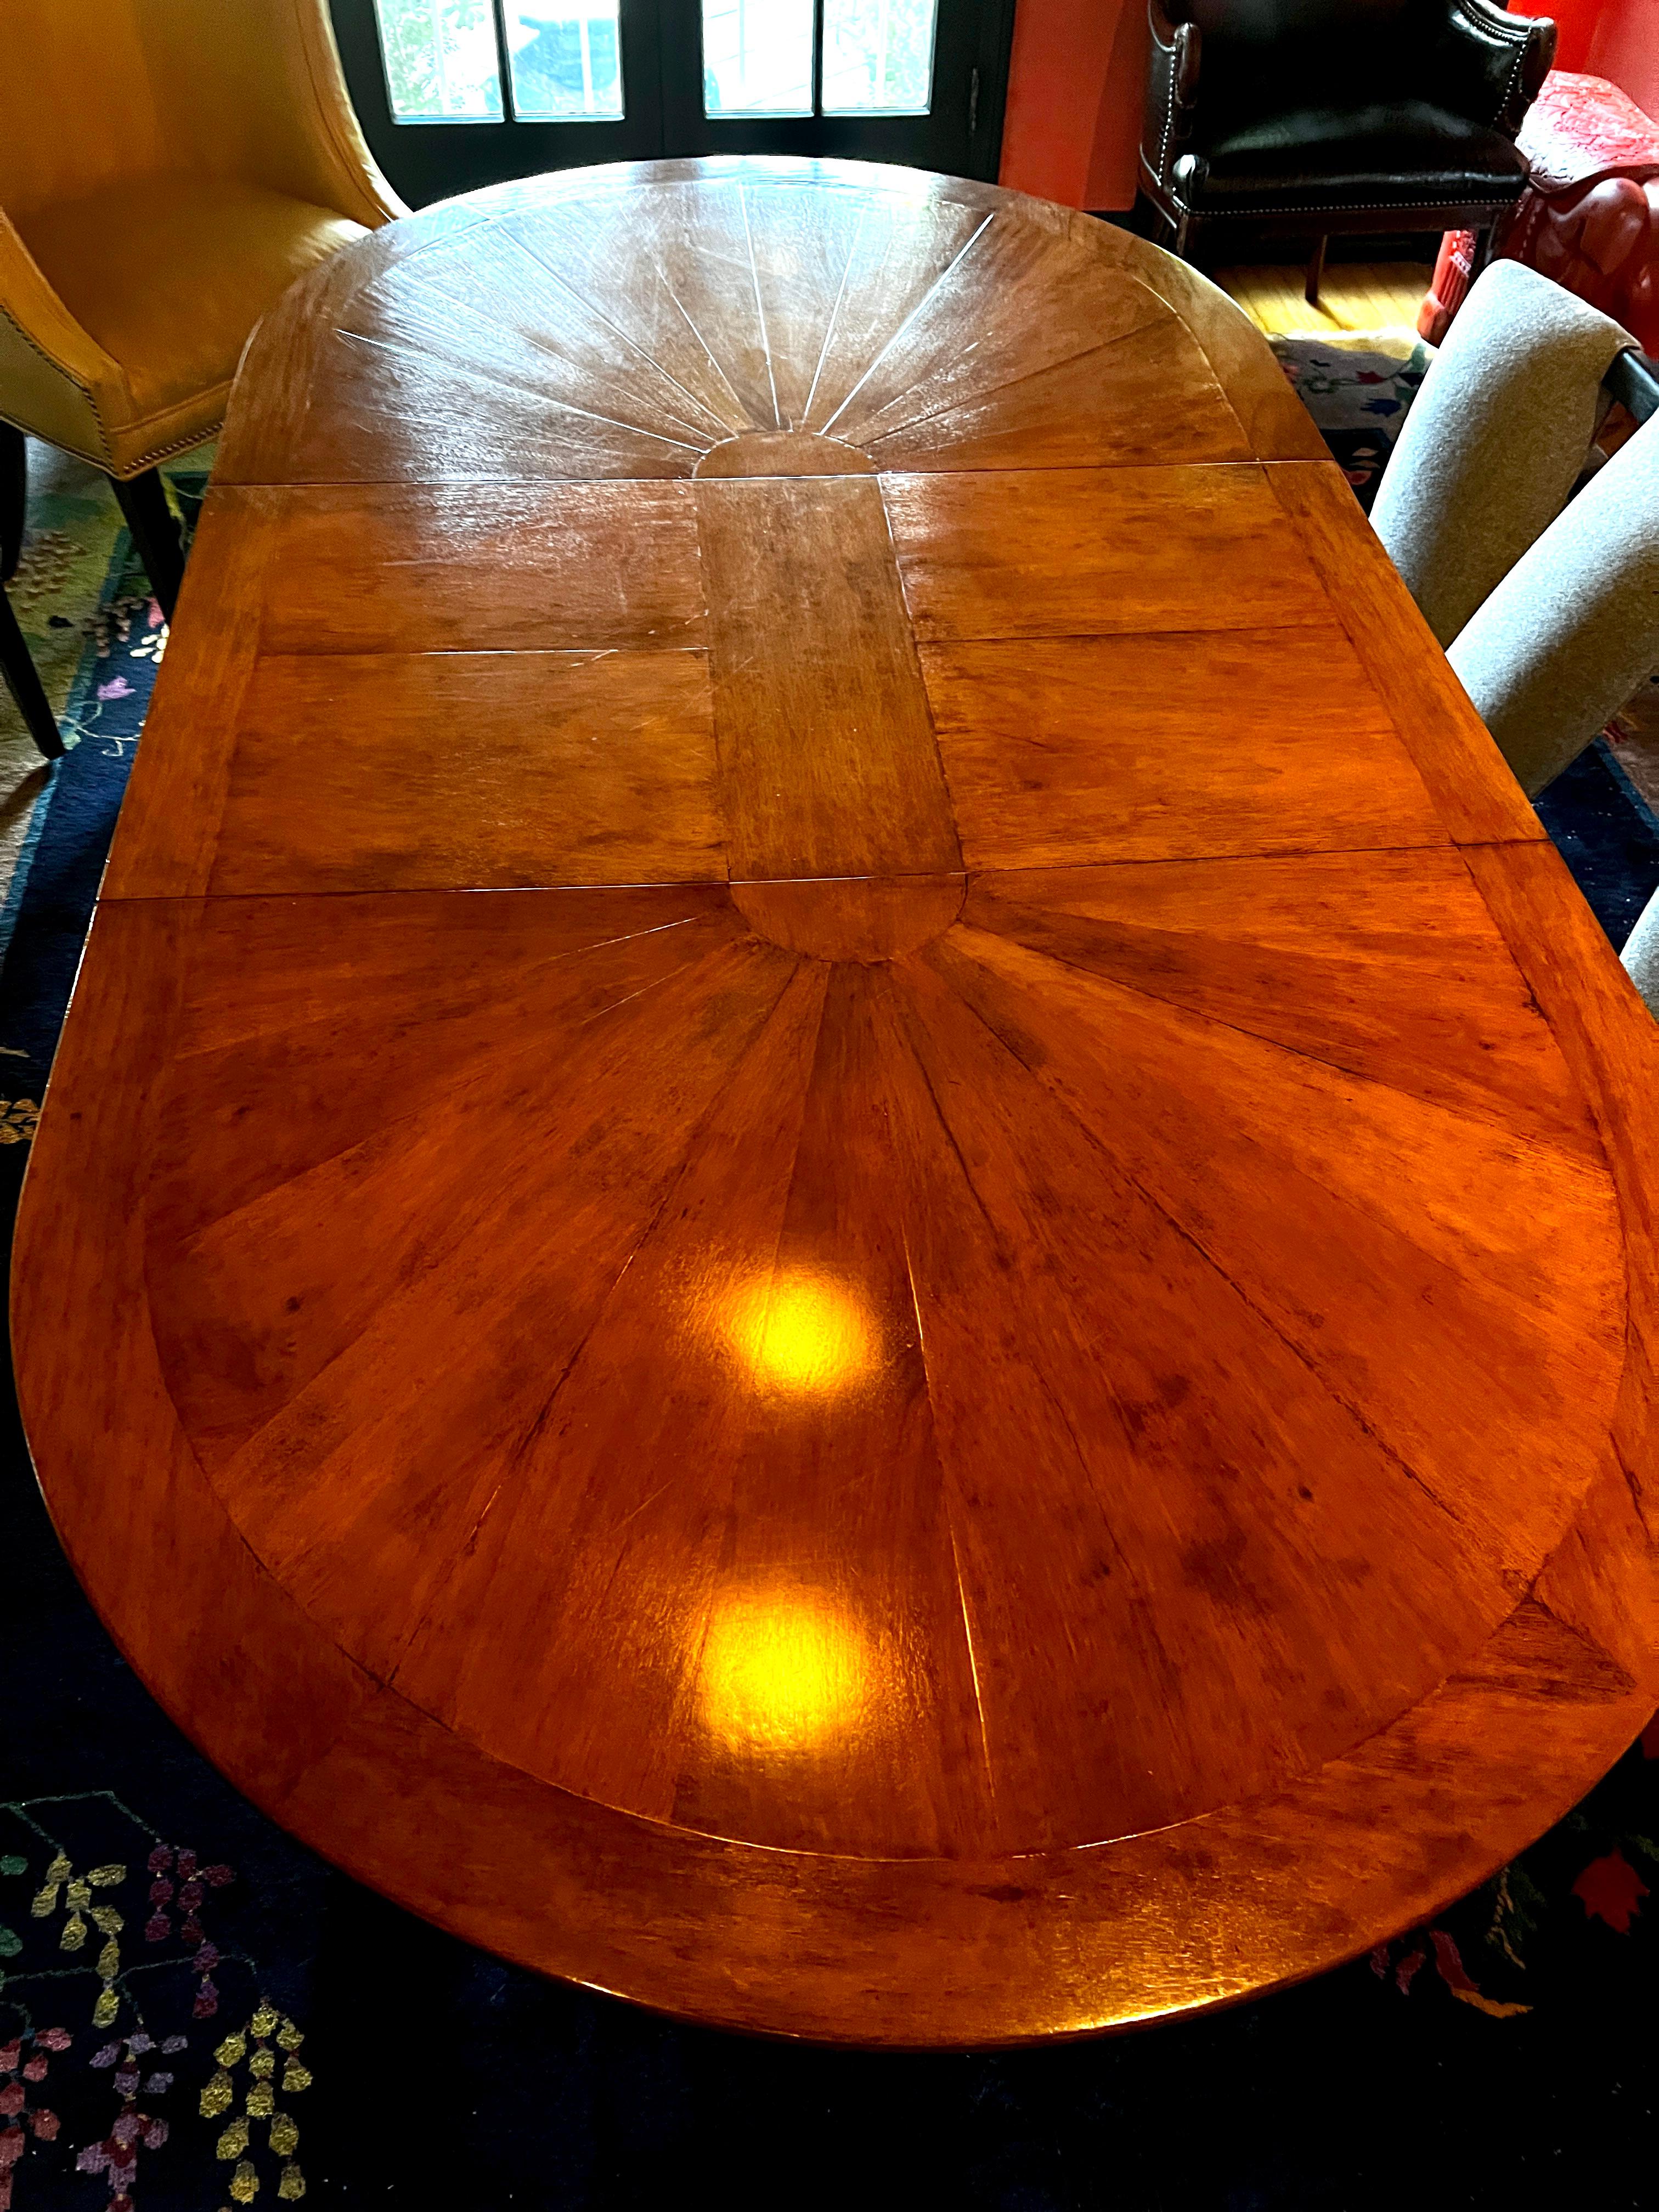 Rose Tarlow Regency Sunburst Walnut Dining Table with Extension 60